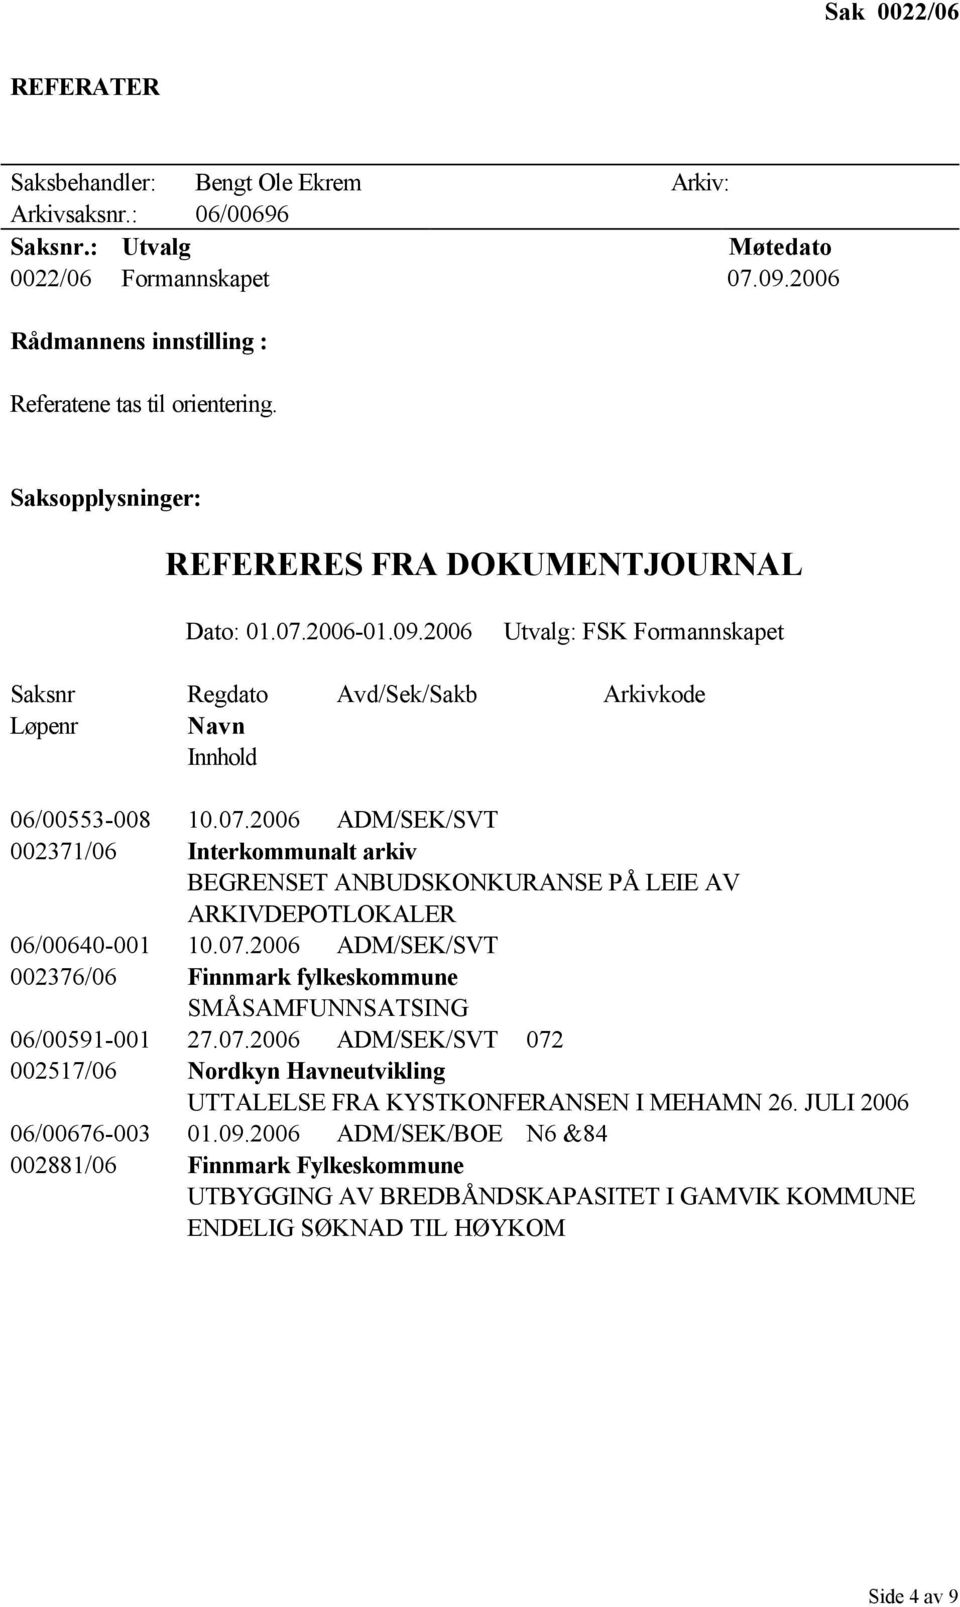 2006 ADM/SEK/SVT 002371/06 Interkommunalt arkiv BEGRENSET ANBUDSKONKURANSE PÅ LEIE AV ARKIVDEPOTLOKALER 06/00640-001 10.07.